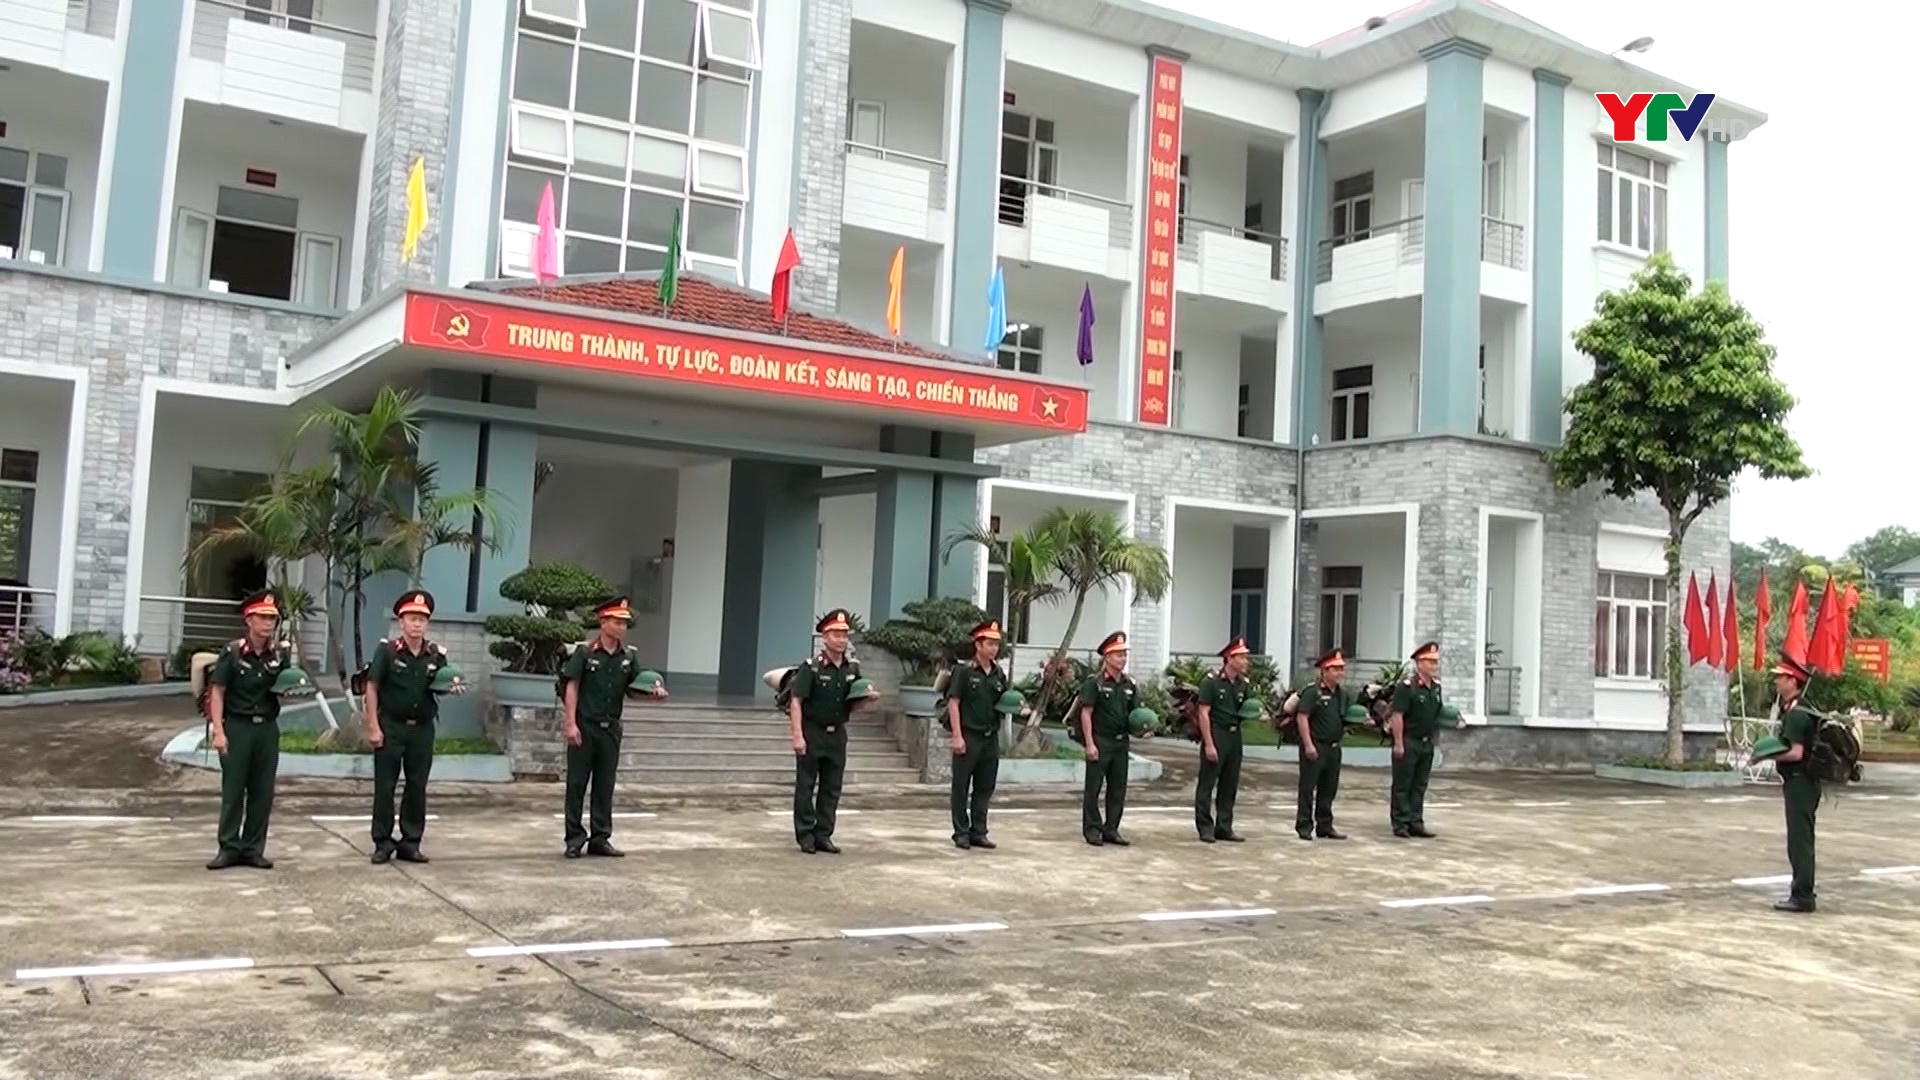 Quân khu 2 đánh giá cao phần thi của Ban CHQS huyện Văn Yên tại Hội thi 